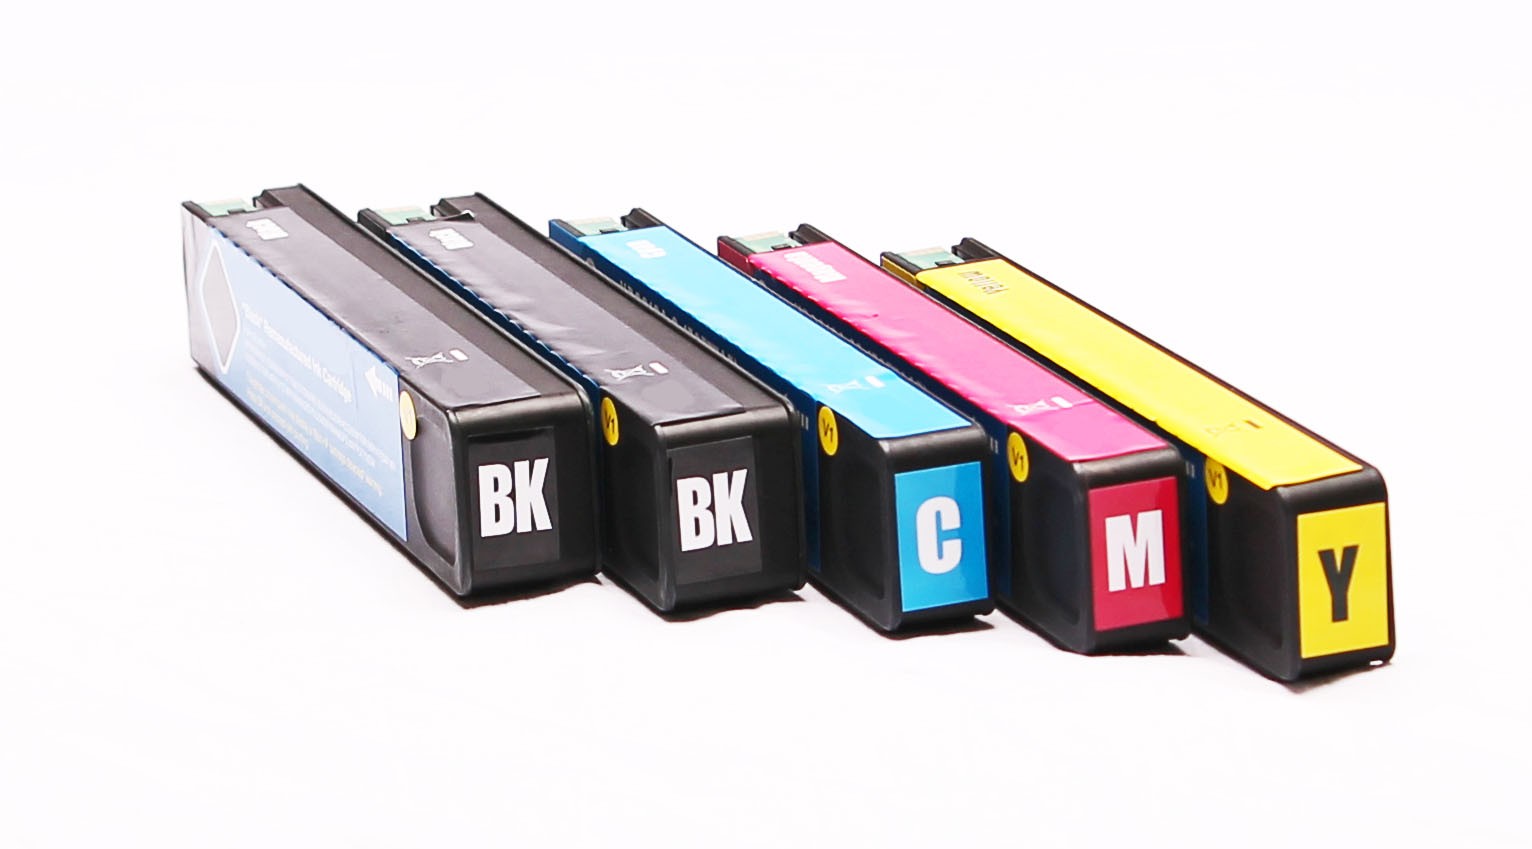  Pack de 5 Cartouches remanufacturées HP 979X Black + couleurs